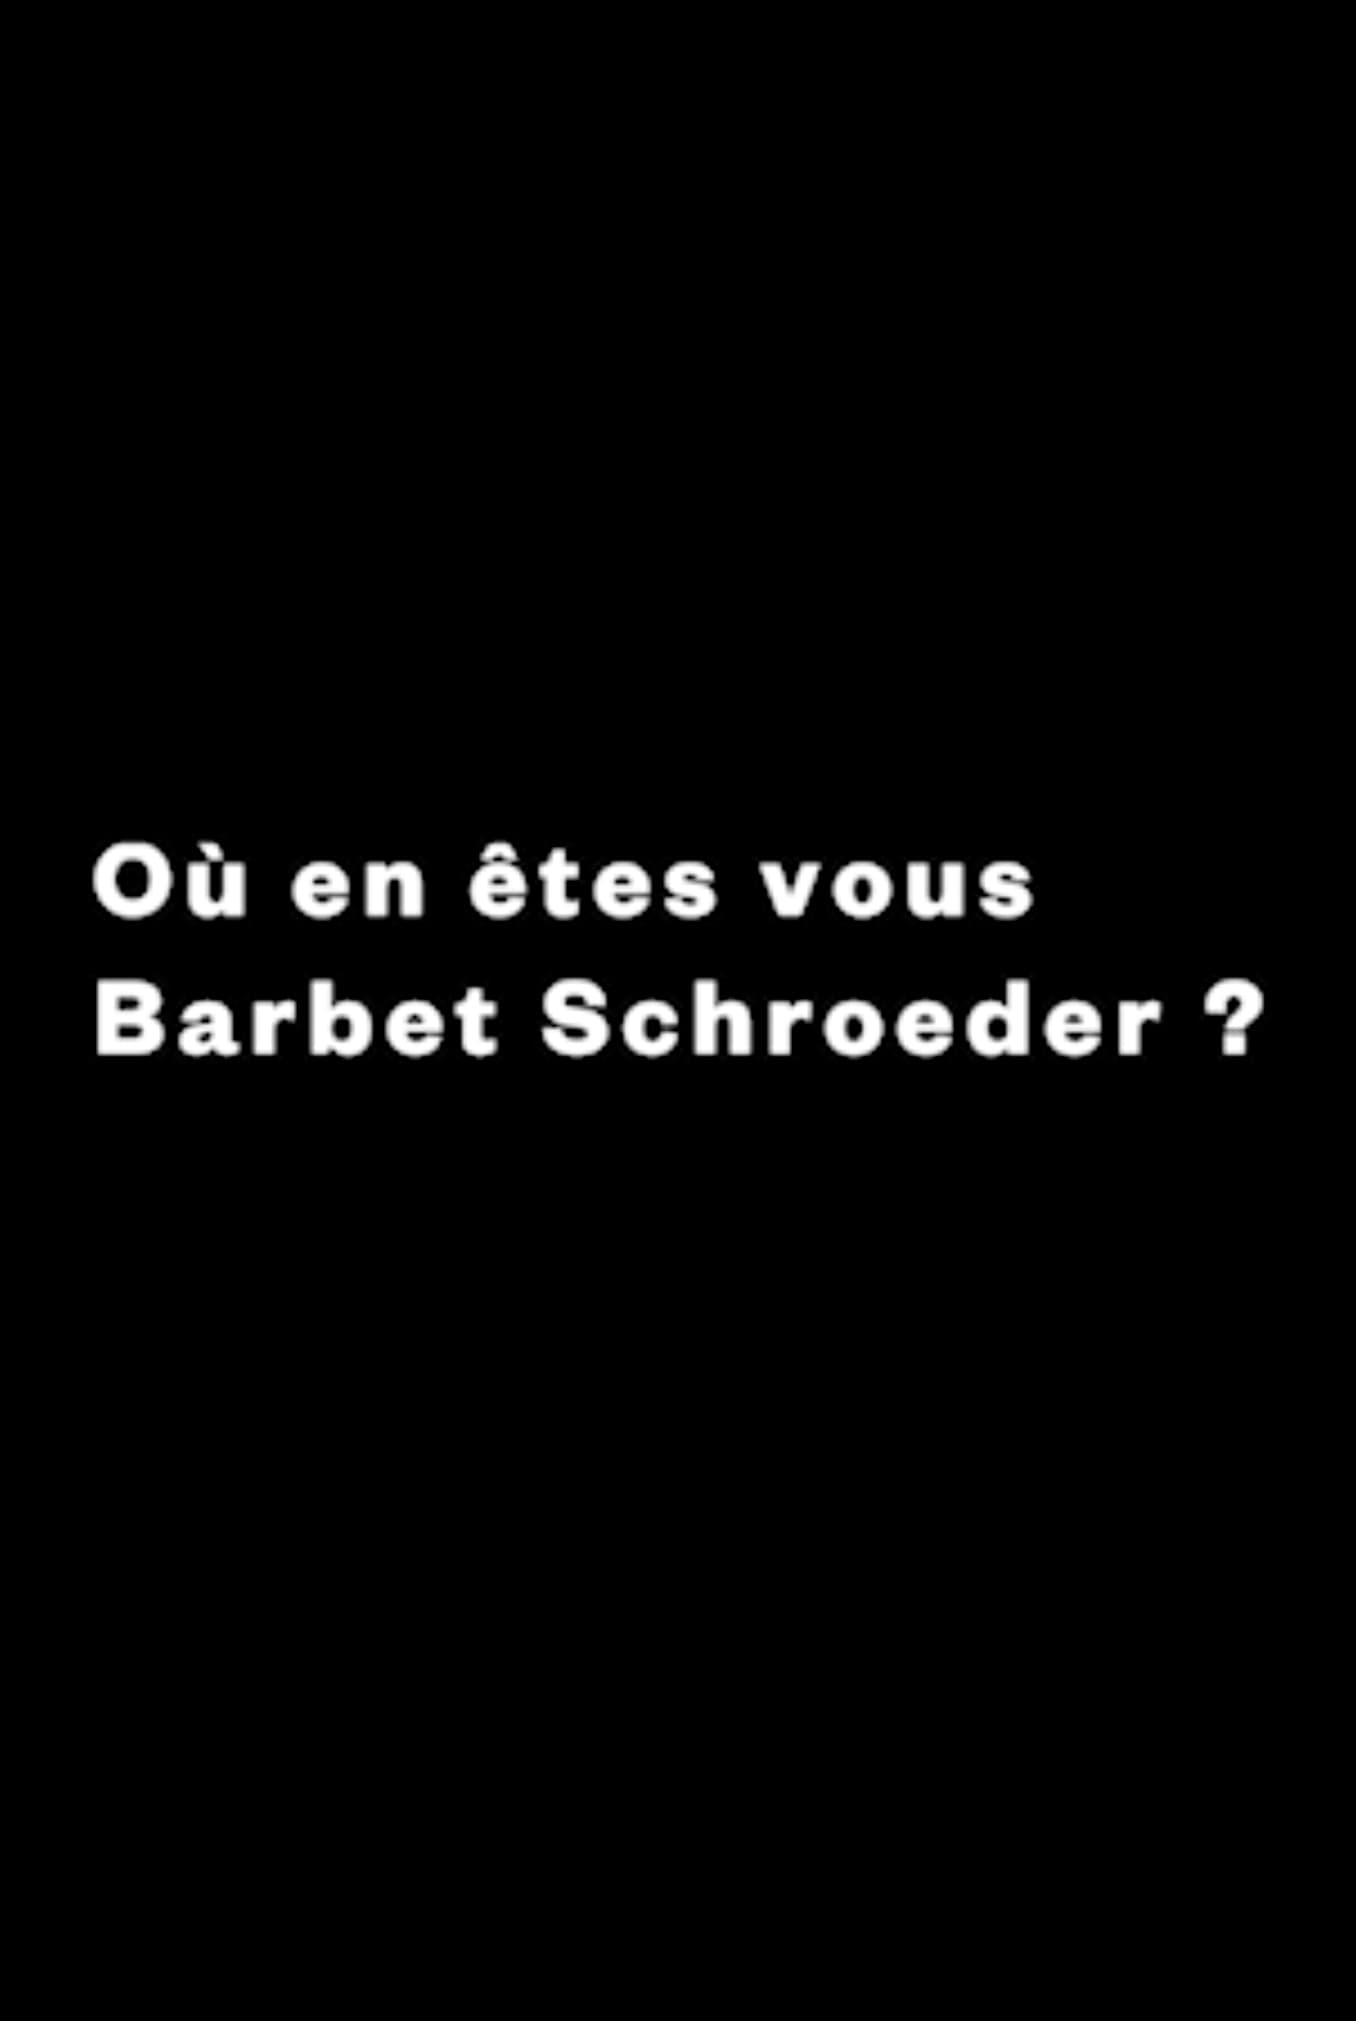 Caratula de OU EN ETES-VOUS, BARBET SCHROEDER? (Qui ets, Barbet Schroeder?) 